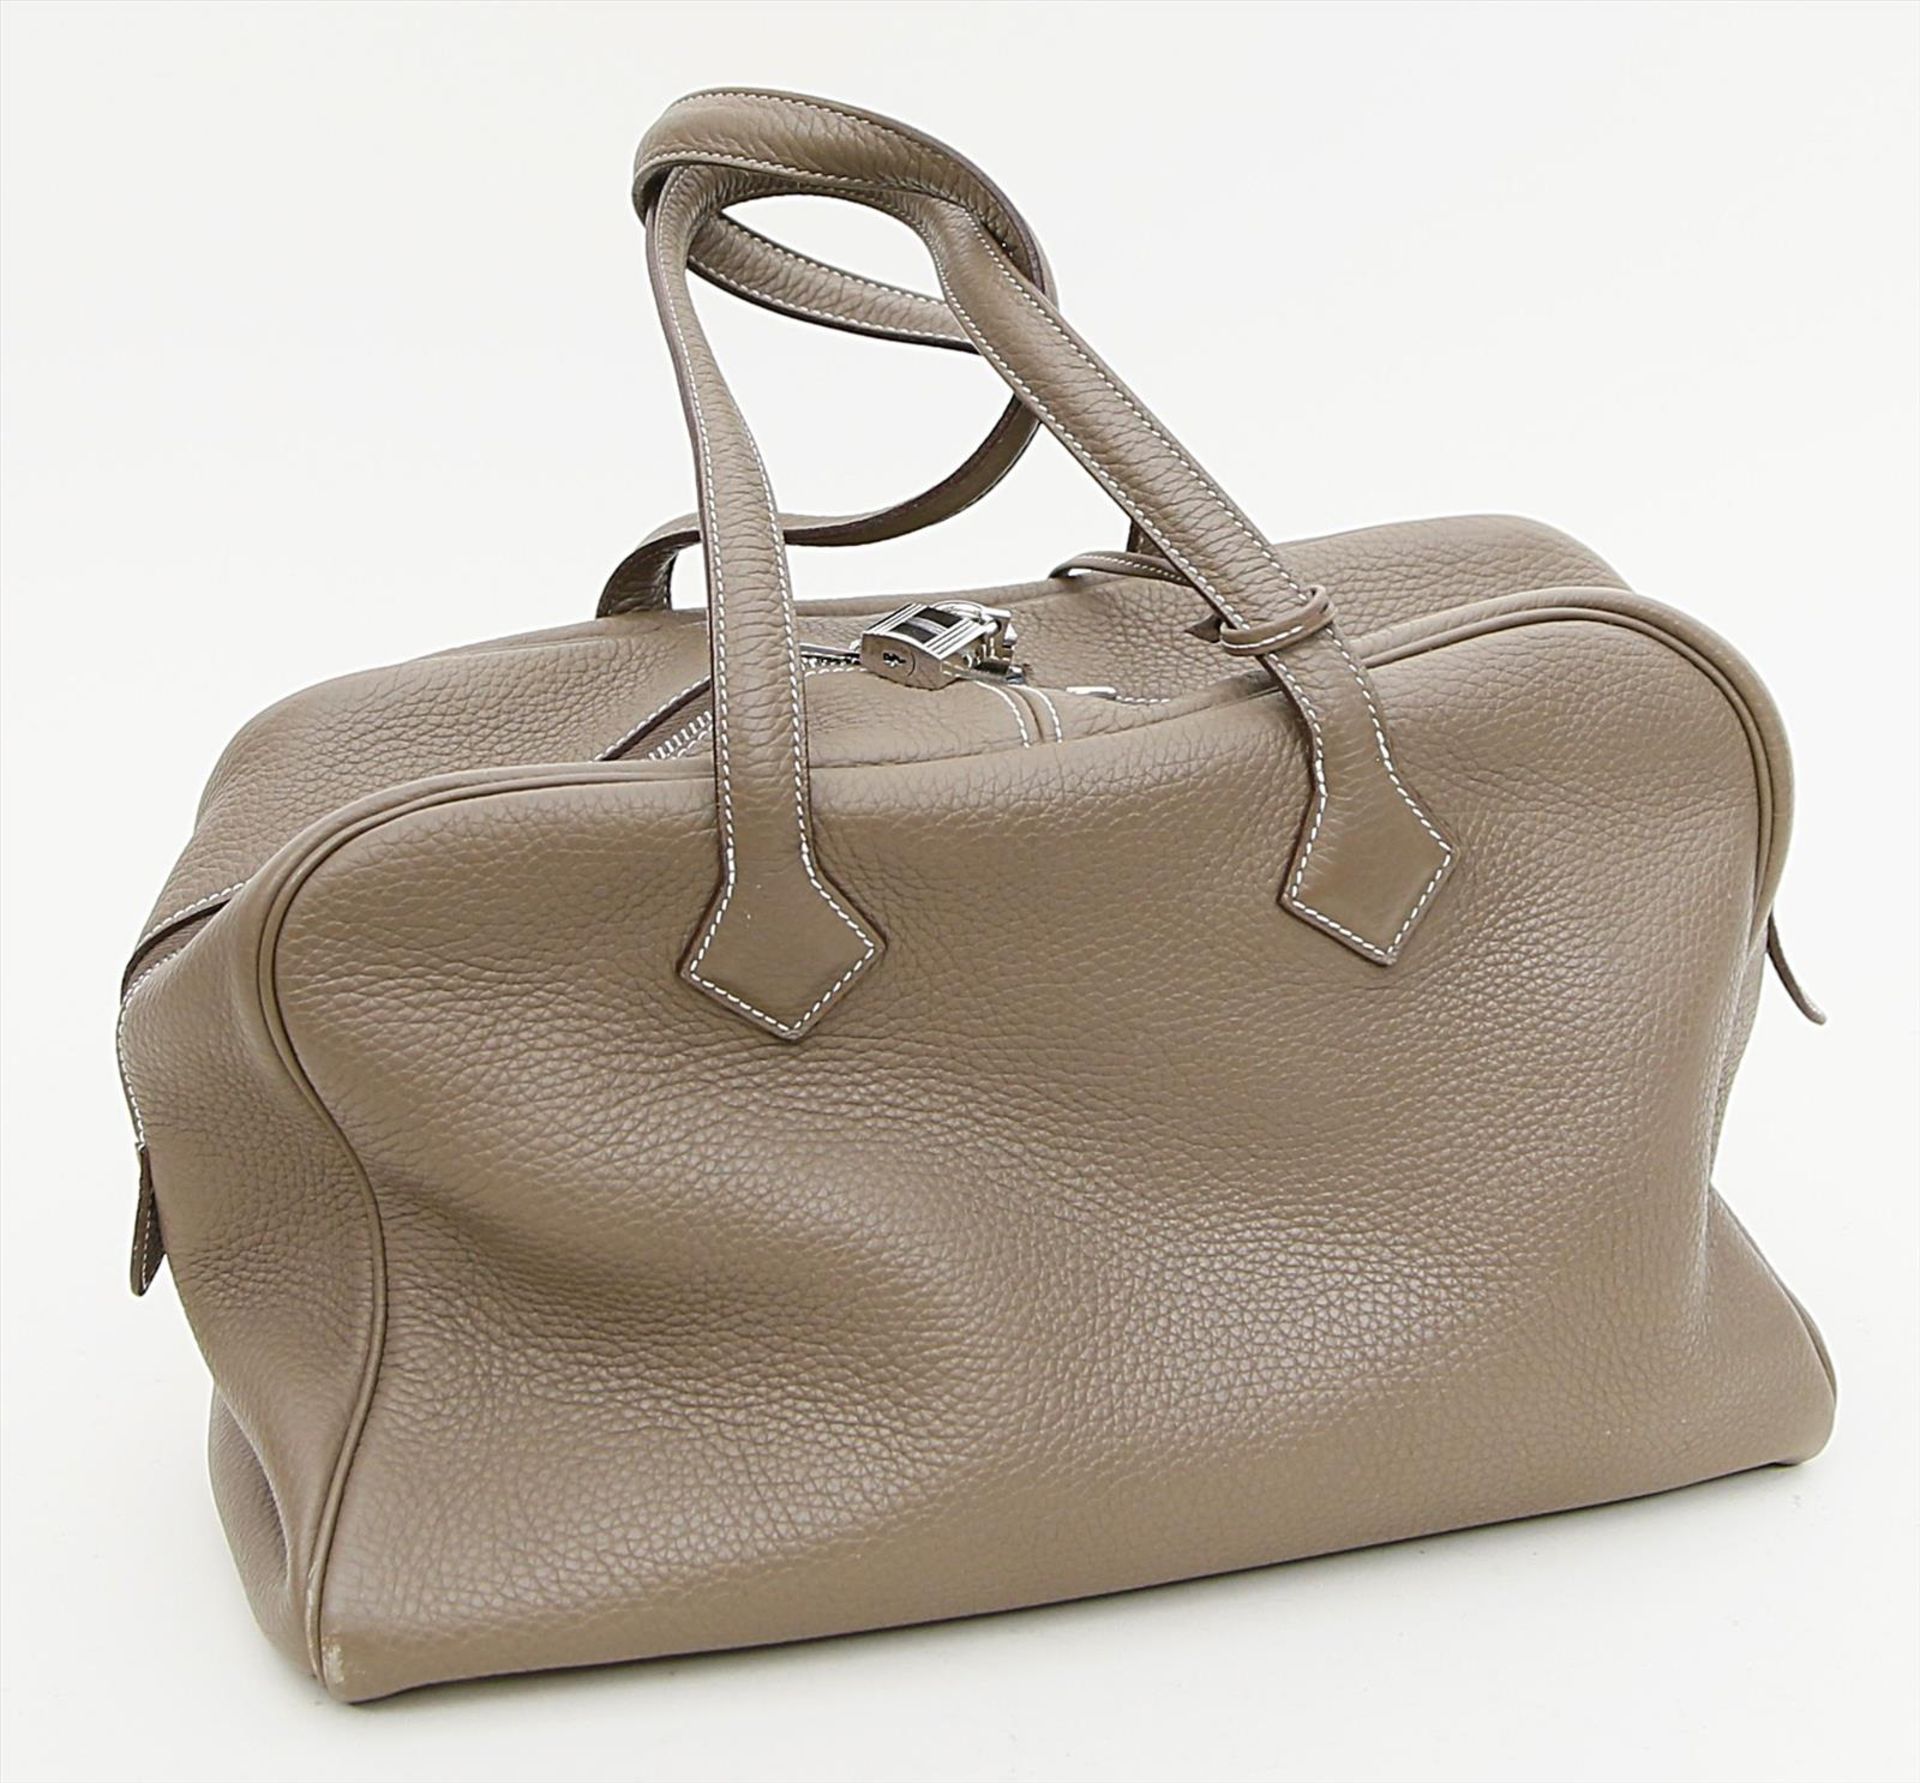 Handtasche "Victoria 35", Hermès.Etoupe Leder mit weißen Nähten, versilberte Hardware. Großer